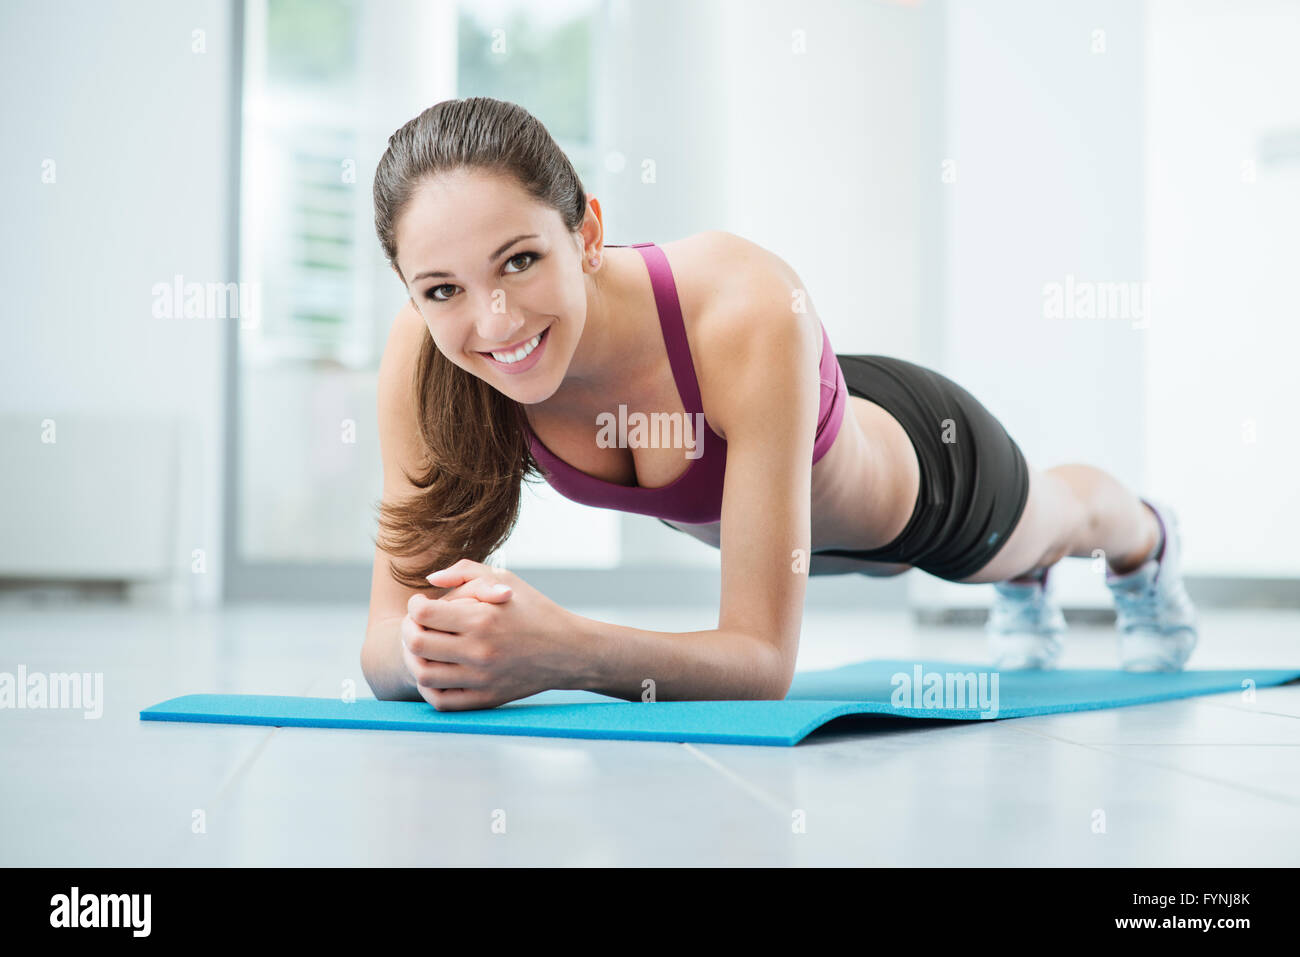 Lächelnde Frau Ausübung in der Turnhalle auf einer Matte, Fitness und Workout-Konzept Stockfoto